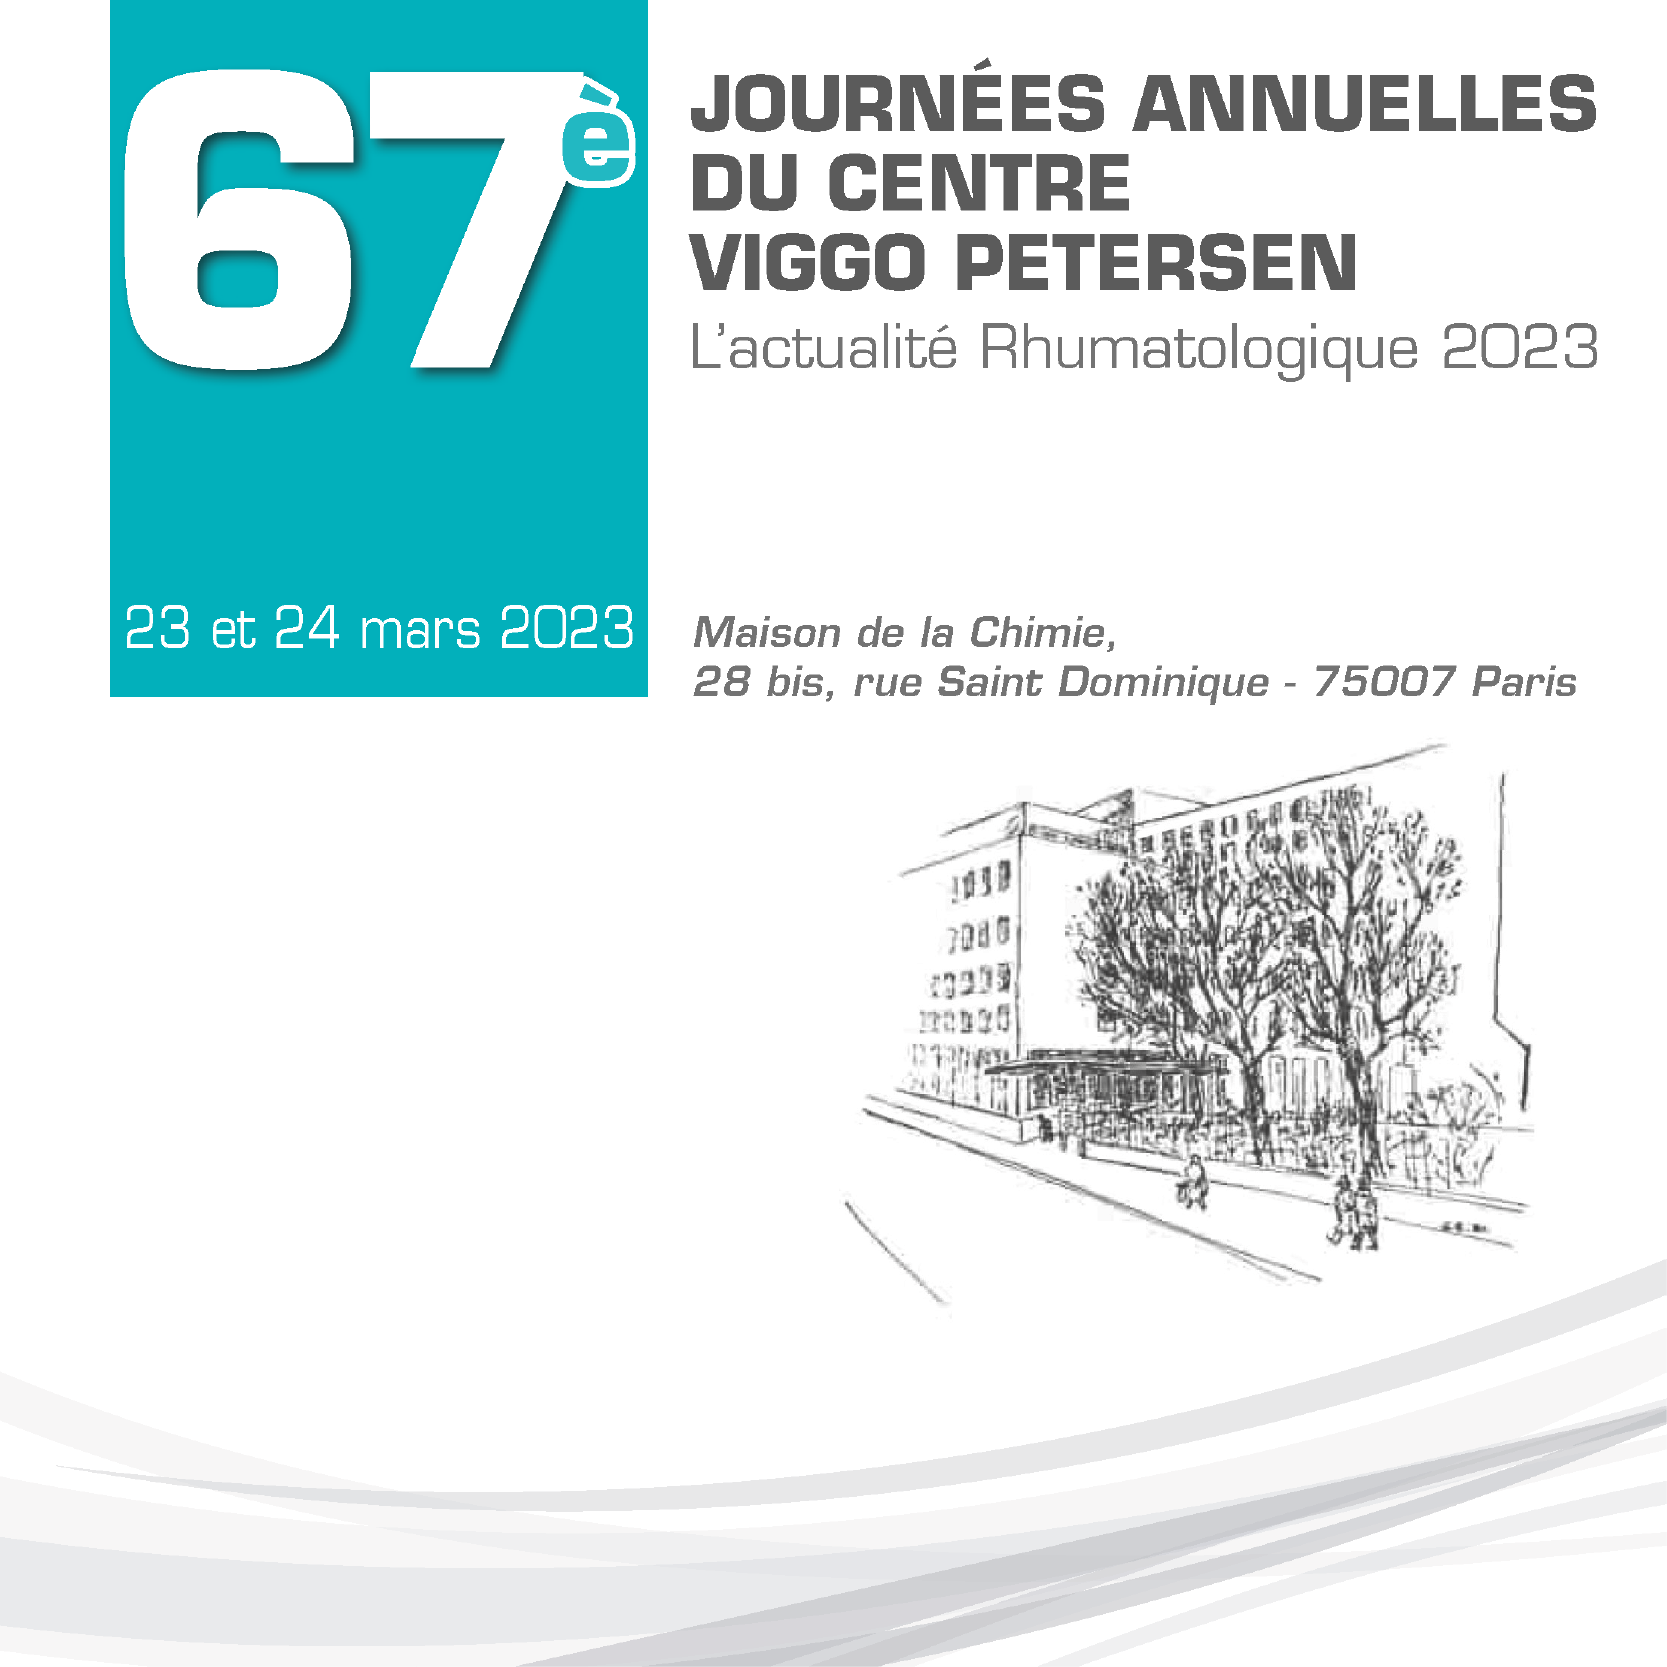 67es Journées annuelles du Centre Viggo Petersen - VIGGO 2023